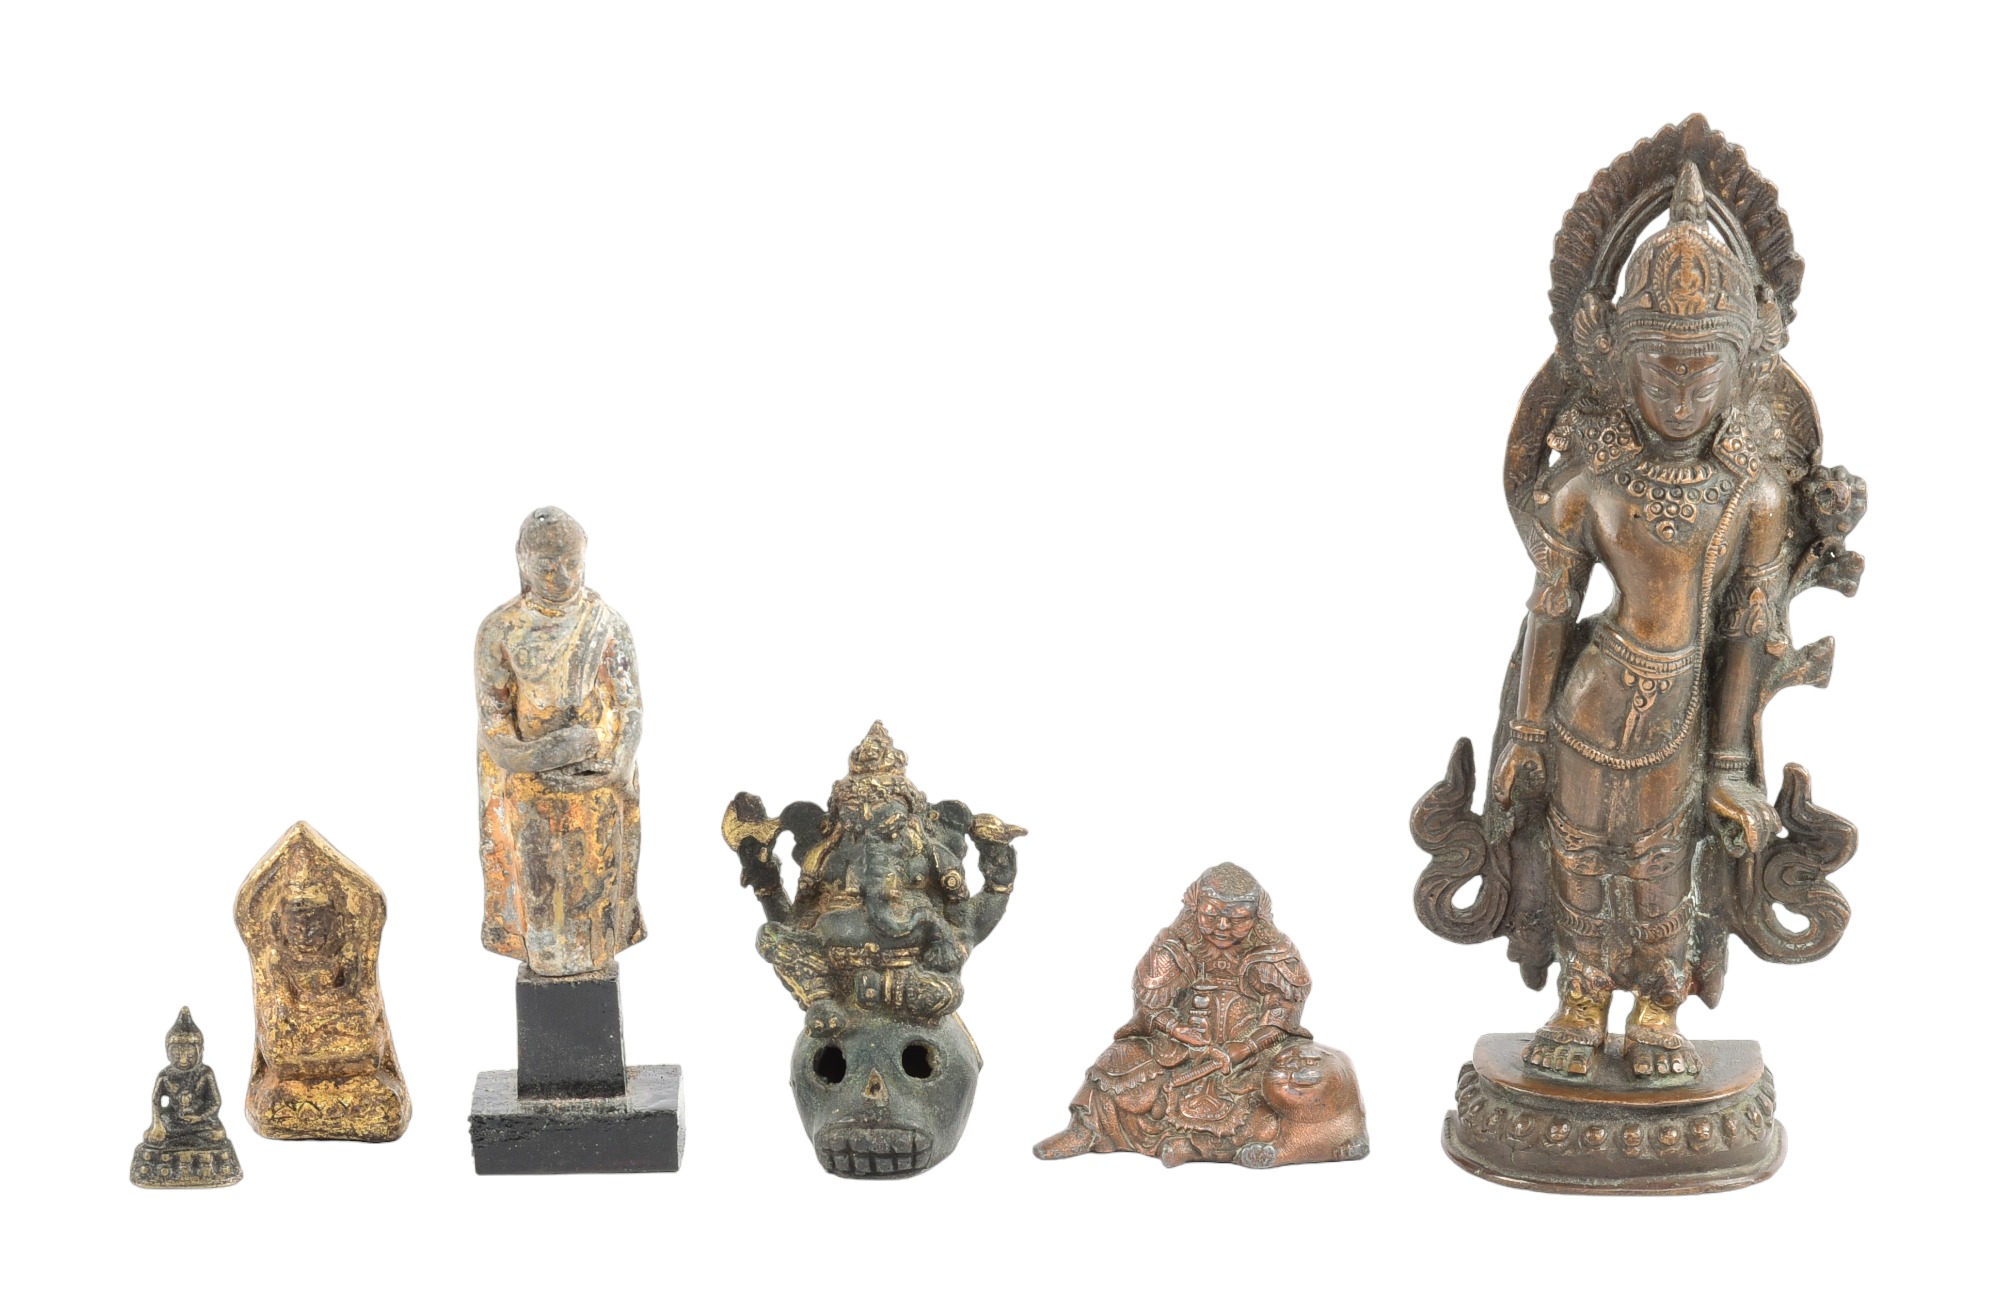  6 Asian deity figures unmarked  3ca6ee